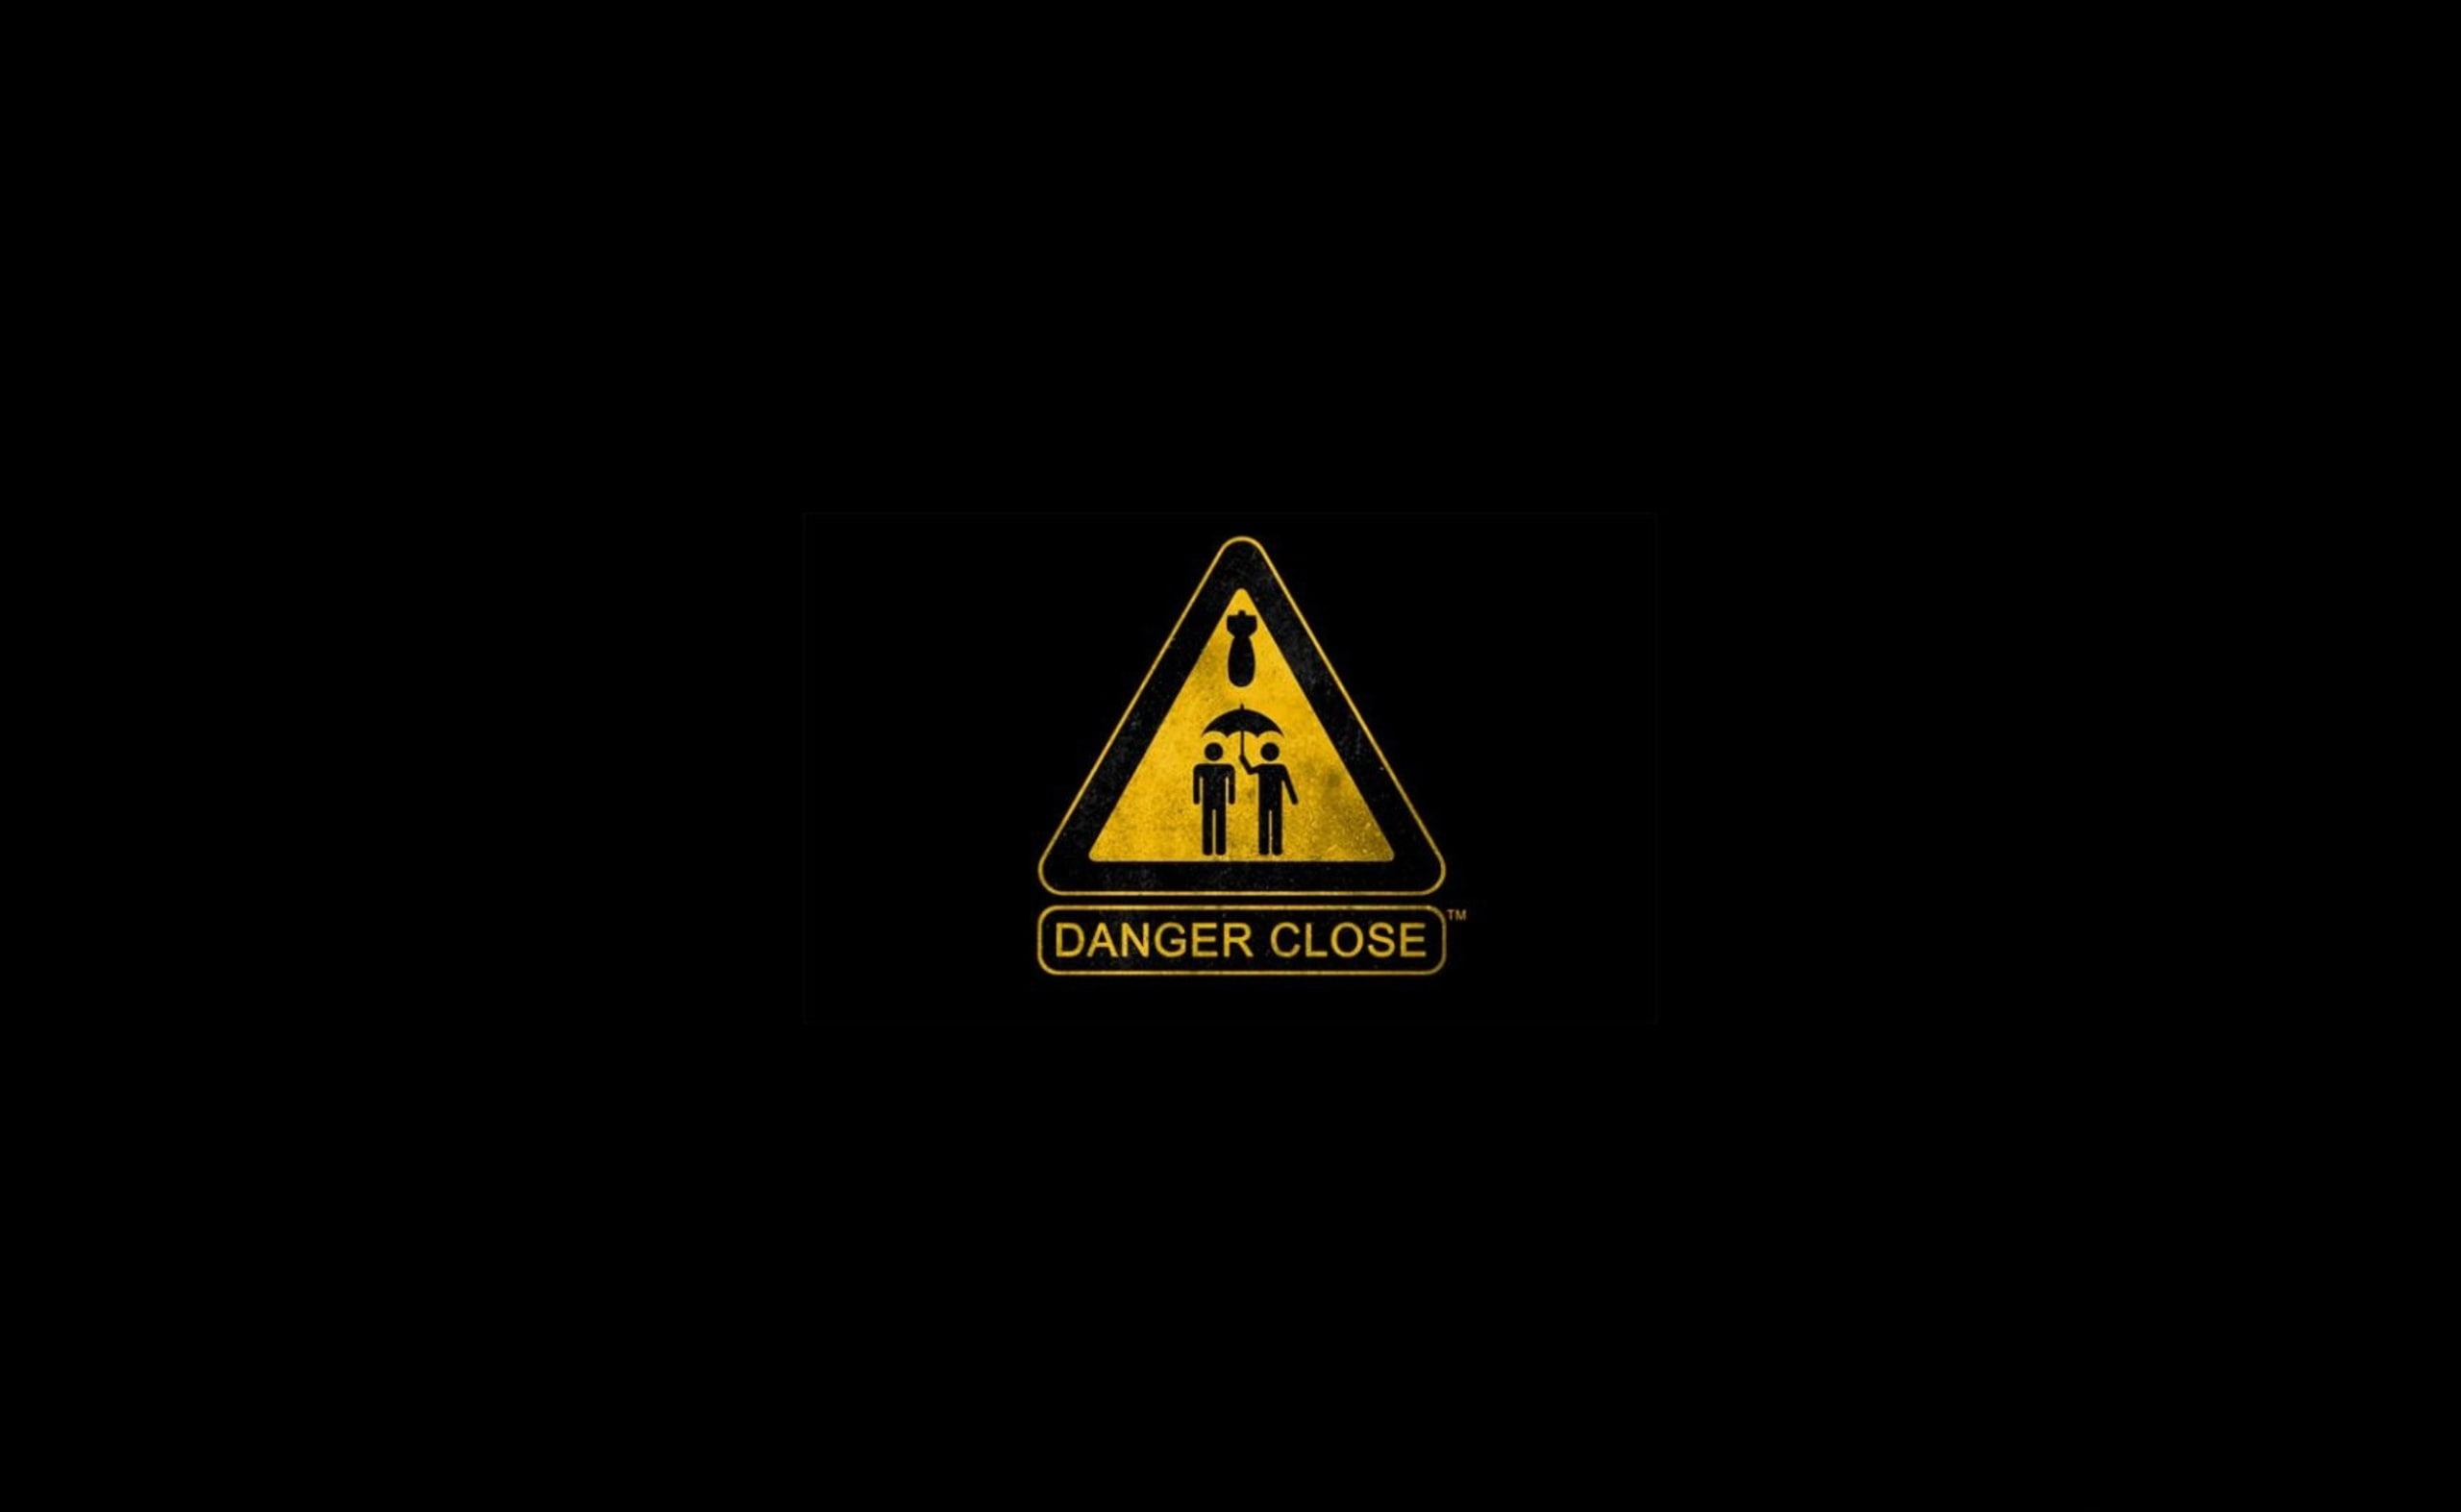 Warning Sign, Danger Close logo illustration, Funny, communication